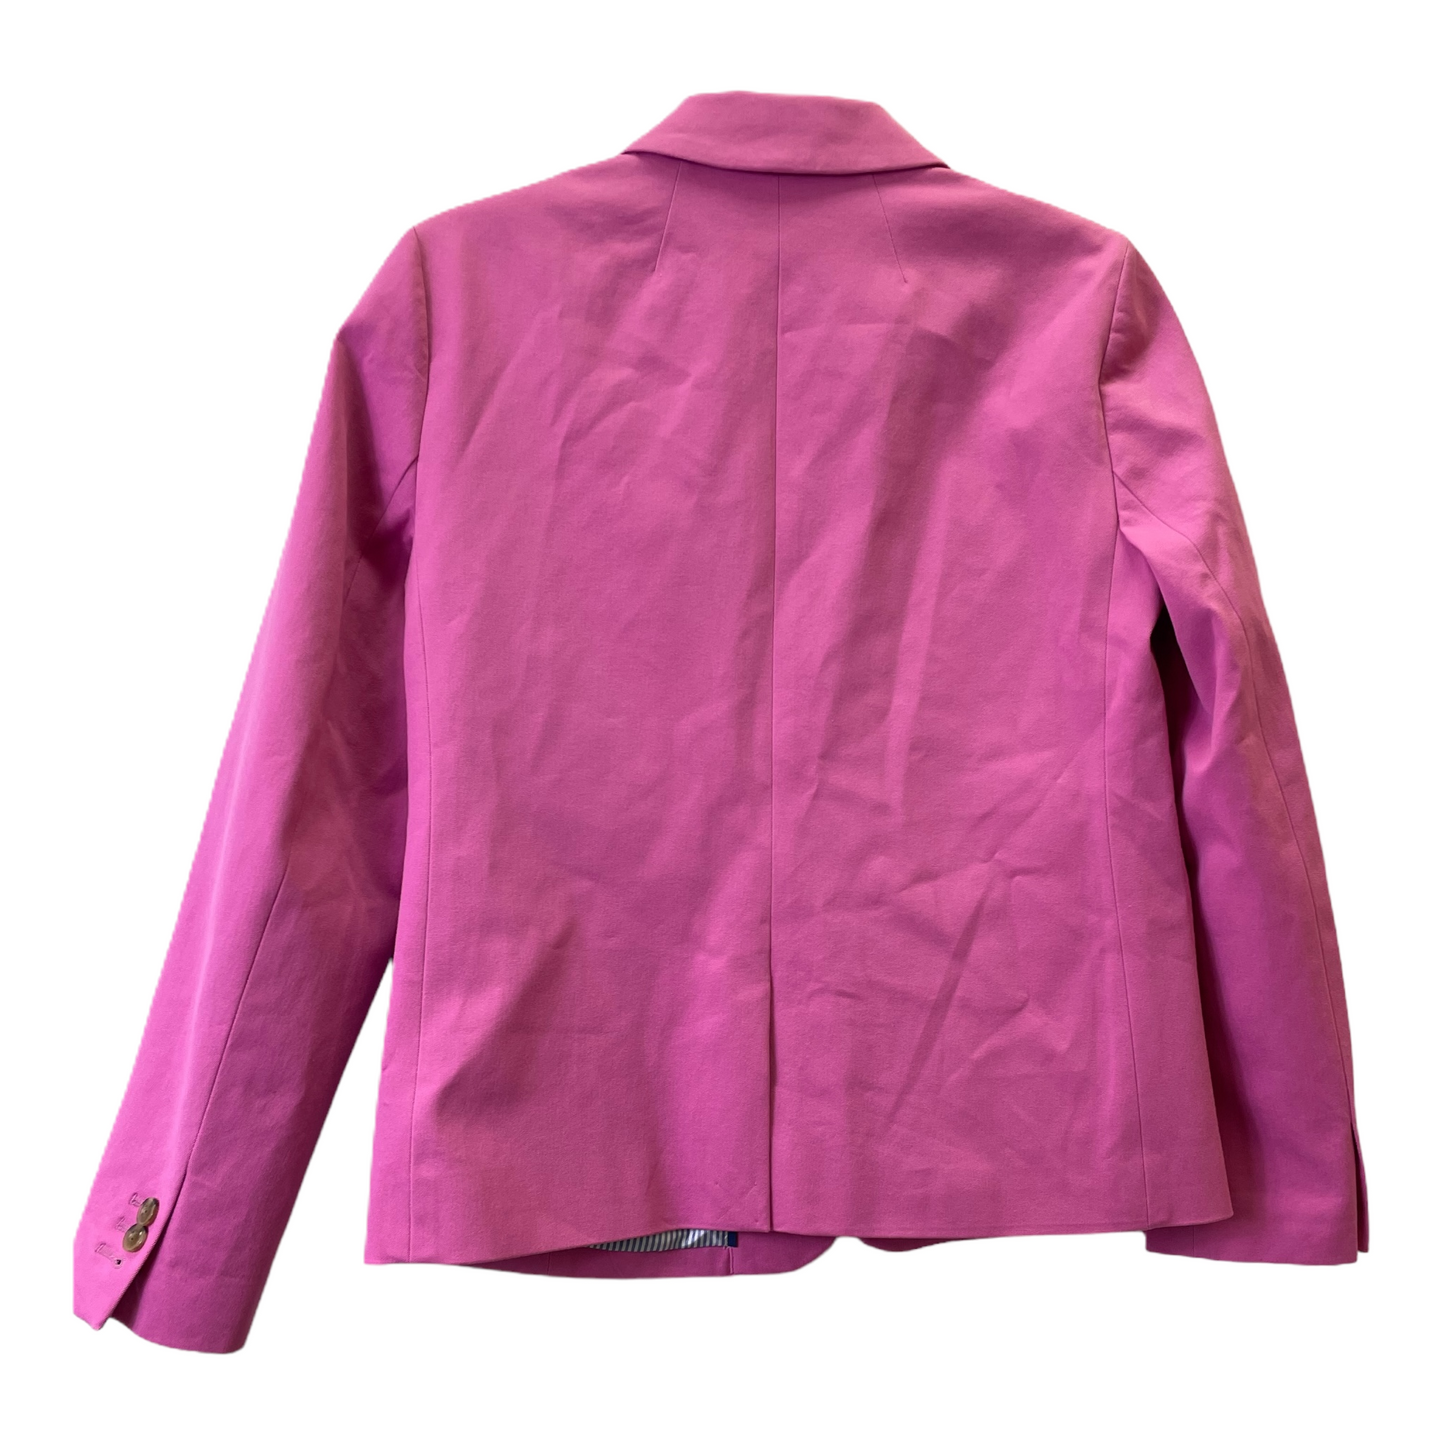 Pink Blazer By J. Crew, Size: S